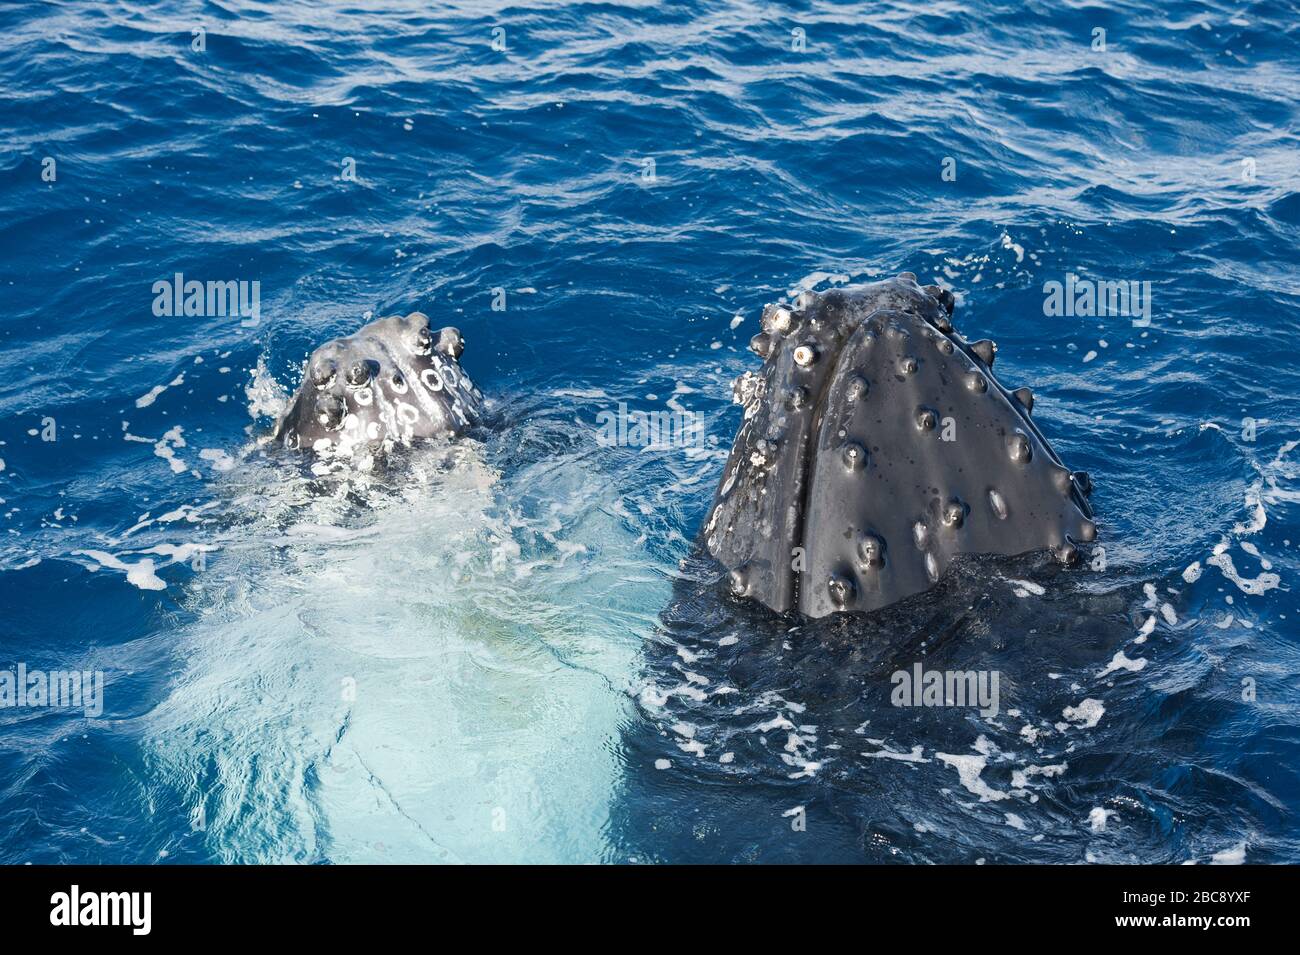 Baleines à bosse surfaçage adulte (Megaptera novaeangliae), Queensland, Australie Banque D'Images